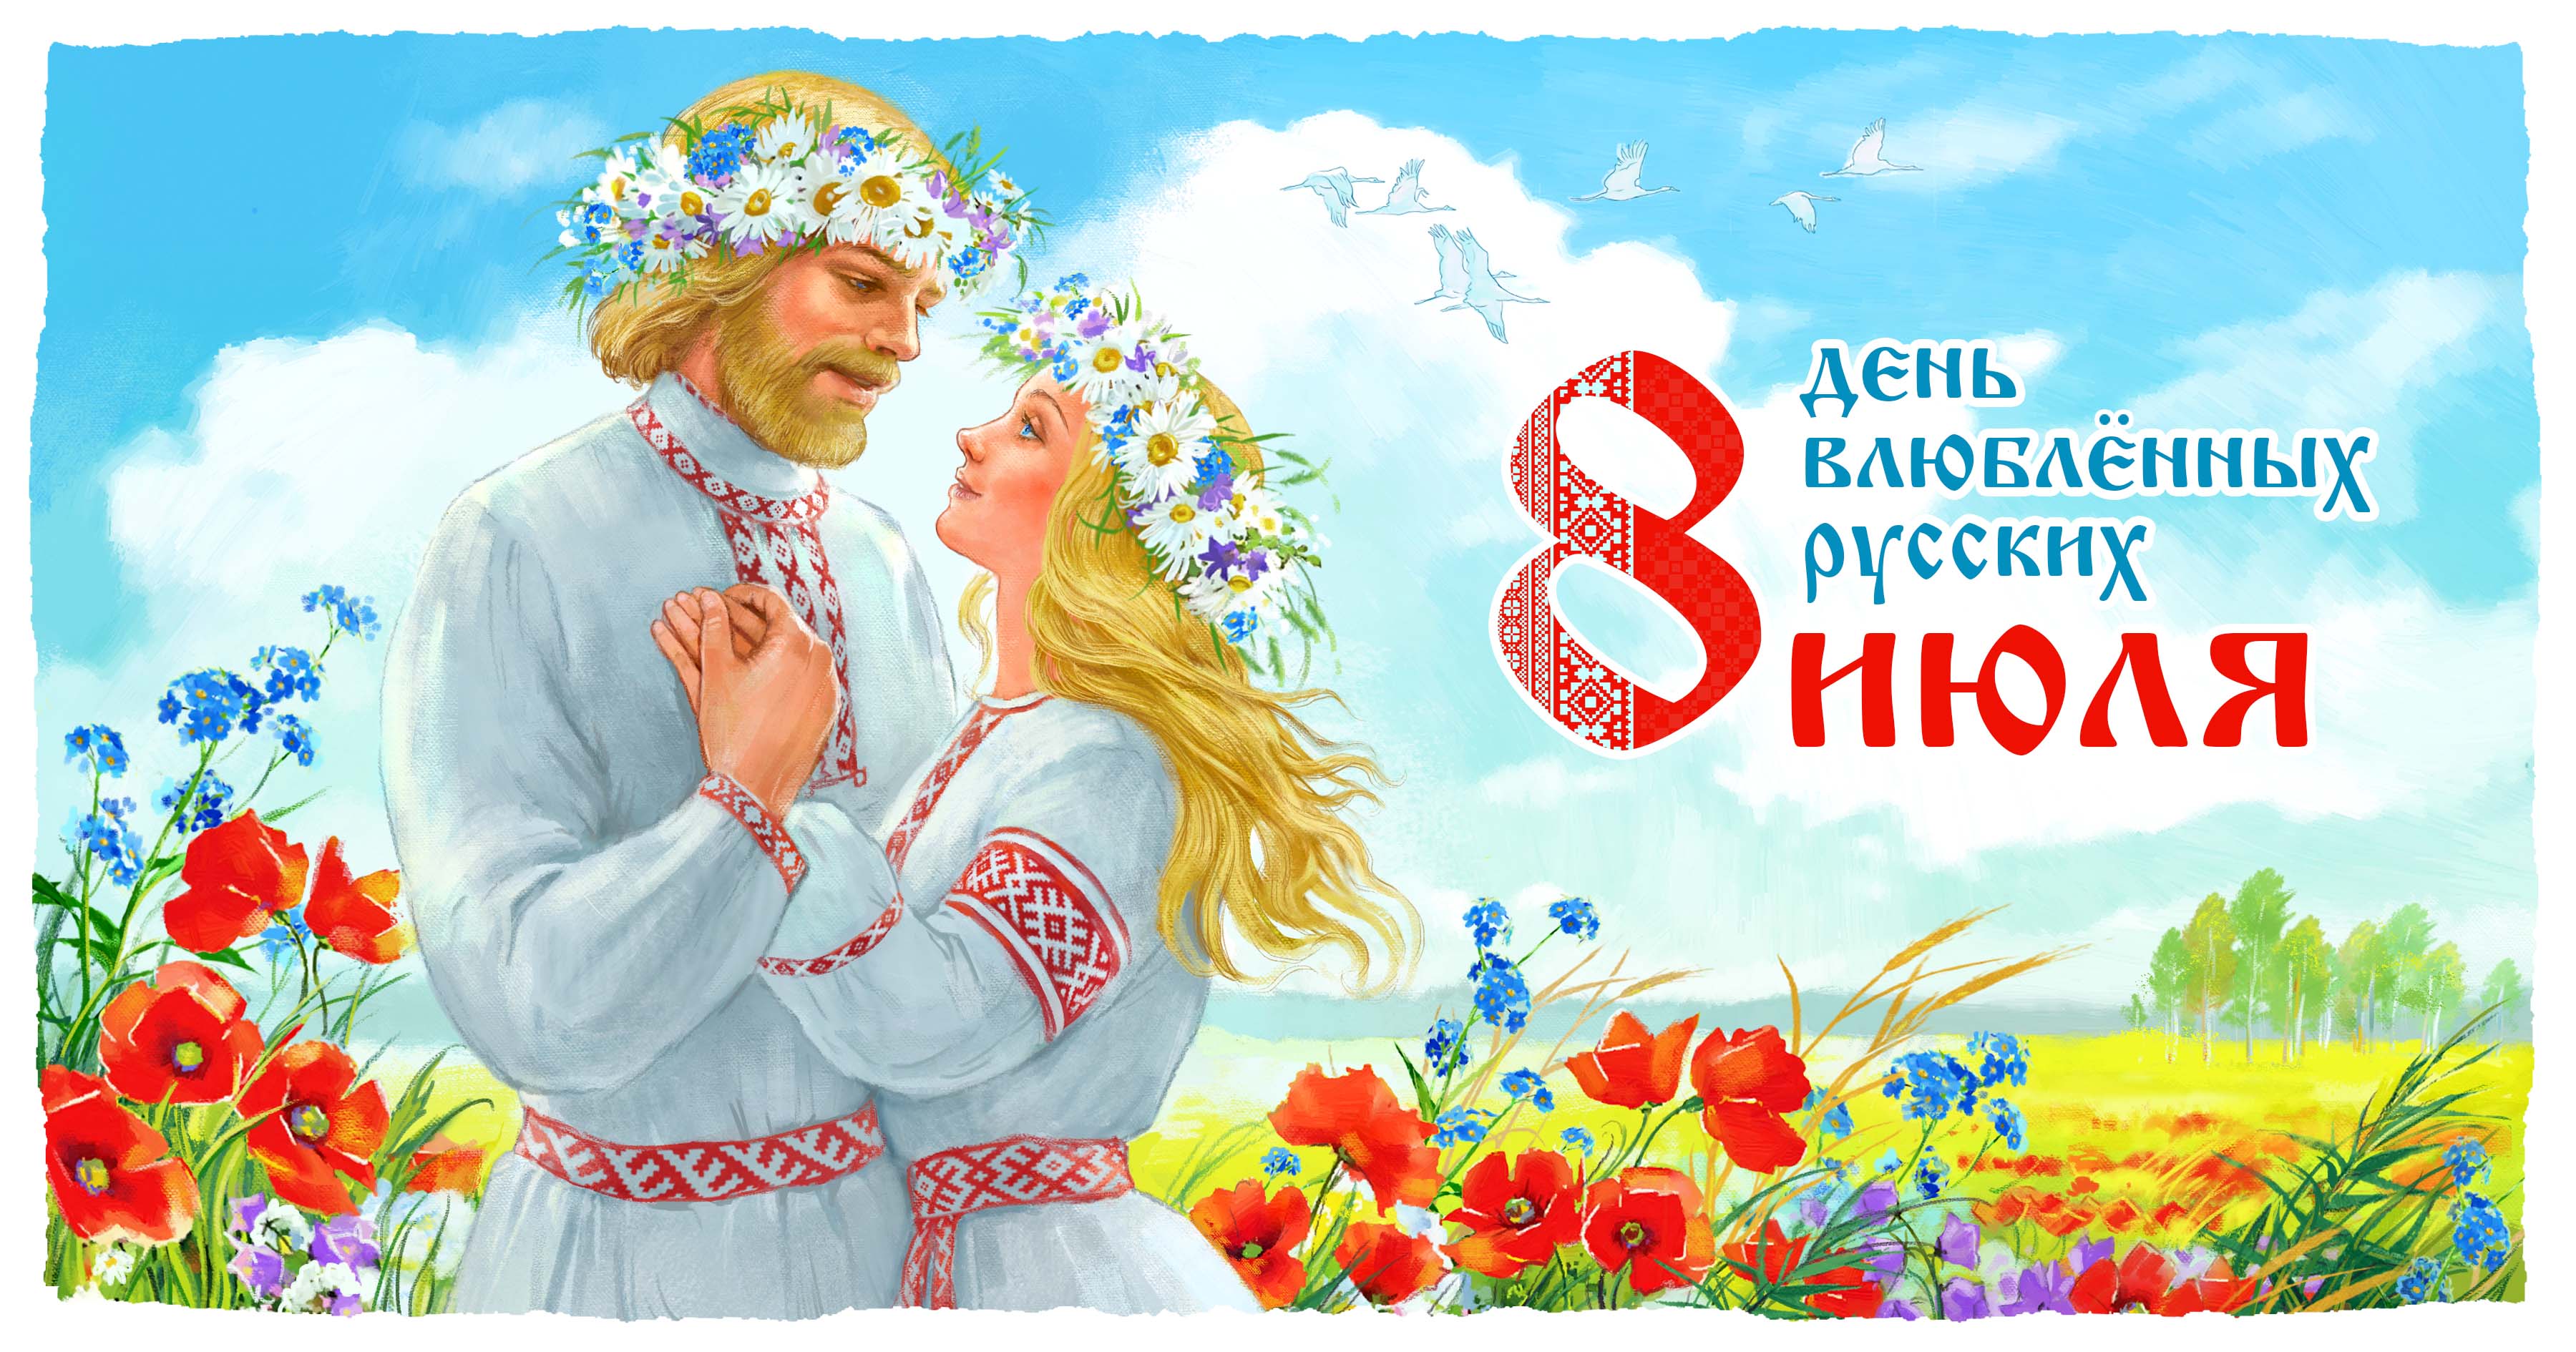 8 июля - день влюблённых русских